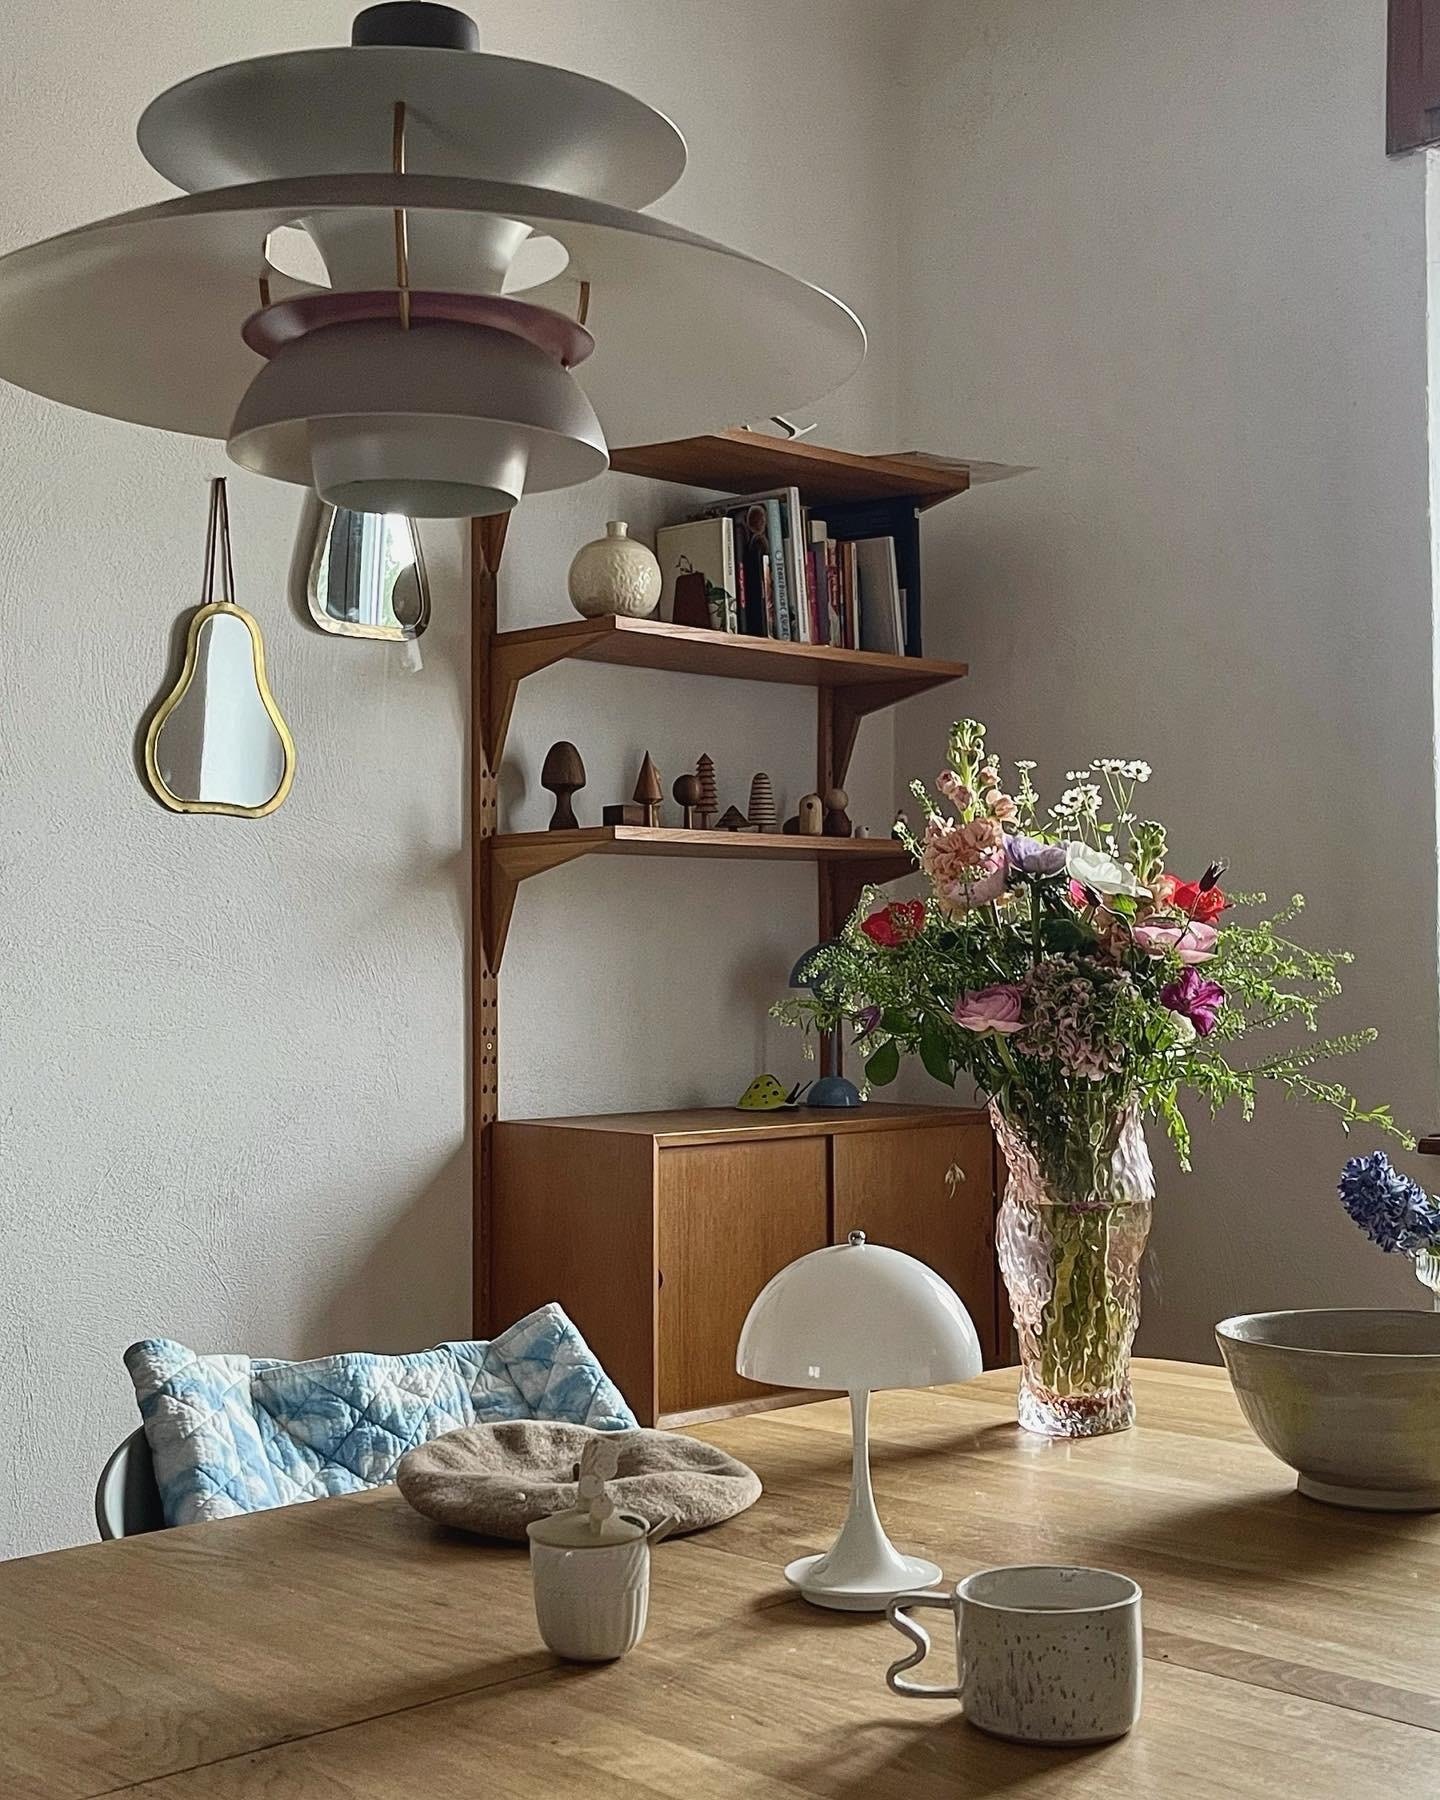 #living#home#interior#interiør#altbauliebe#wohnen#skandinavisch#couchstyle#esszimmer#spiegel#kaffee#blumen#esstisch